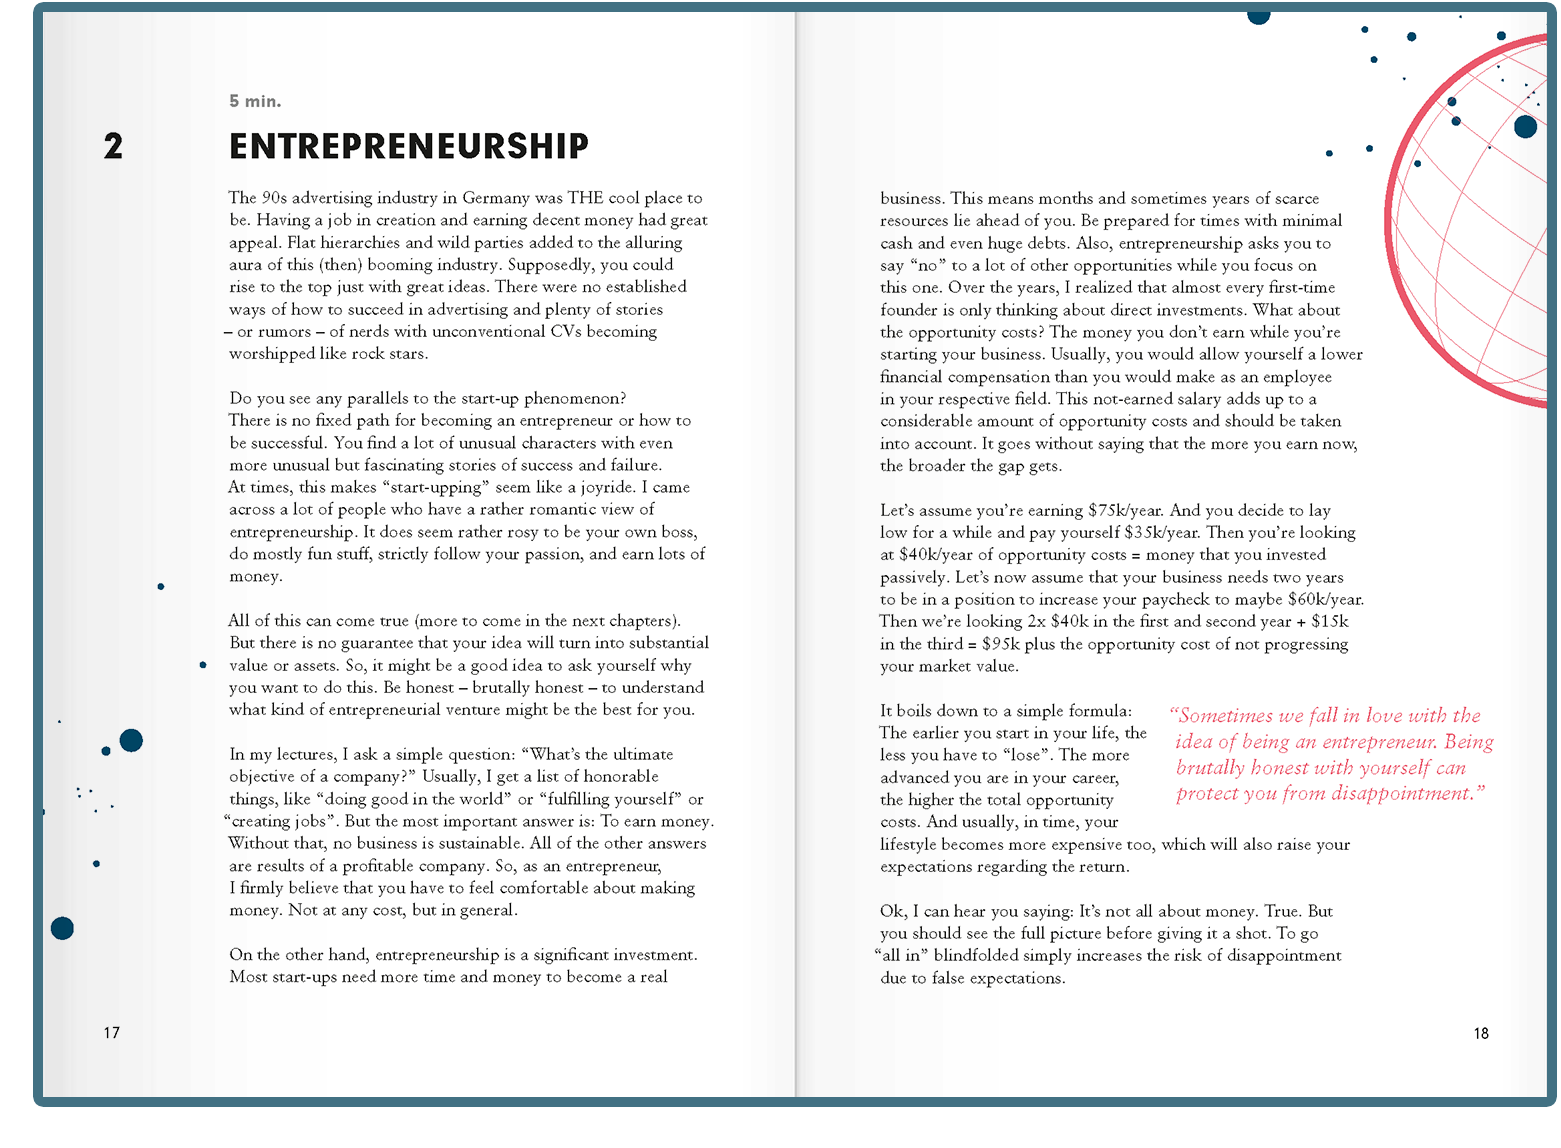 Start-up Journal Preview Chapter 2: Entrepreneurship